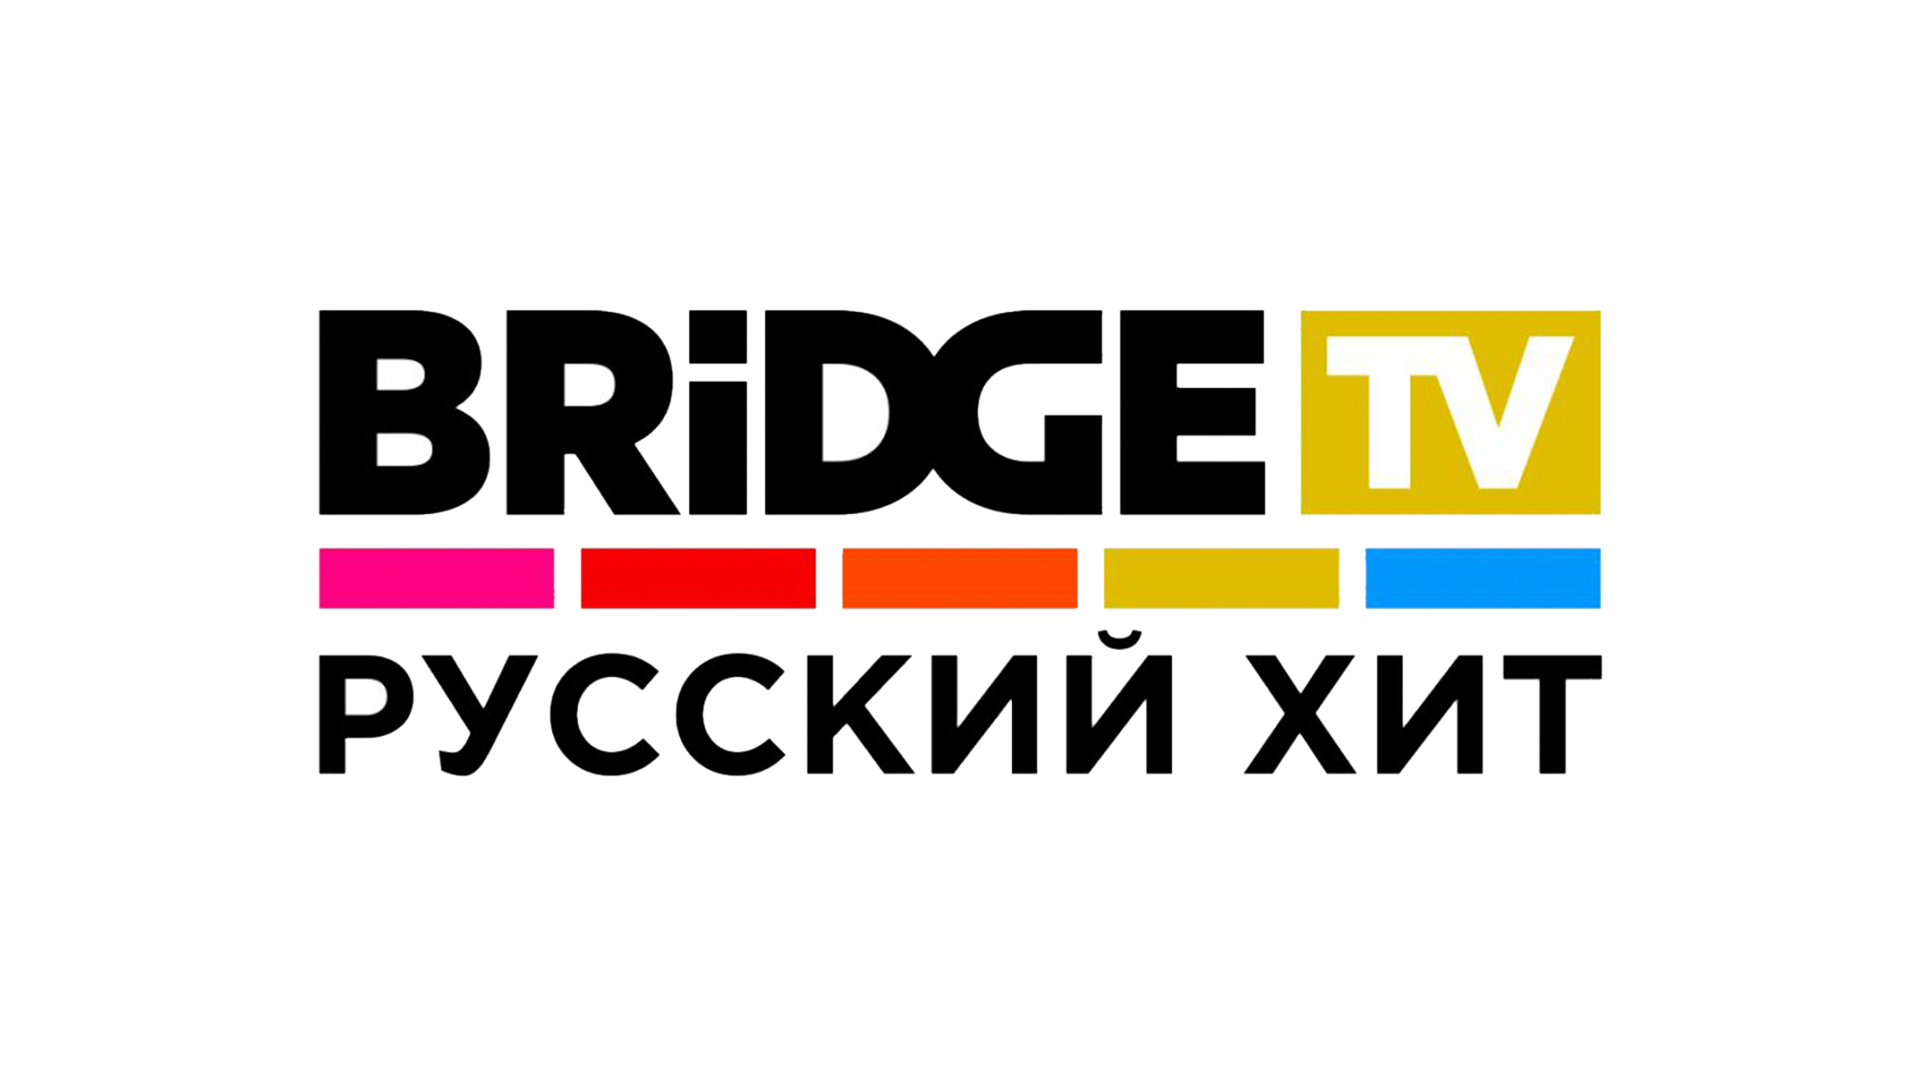 Русский жит. Bridge TV русский хит. Bridge TV логотип. Bridge TV русский хит логотип. Логотип канала бридж ТВ.